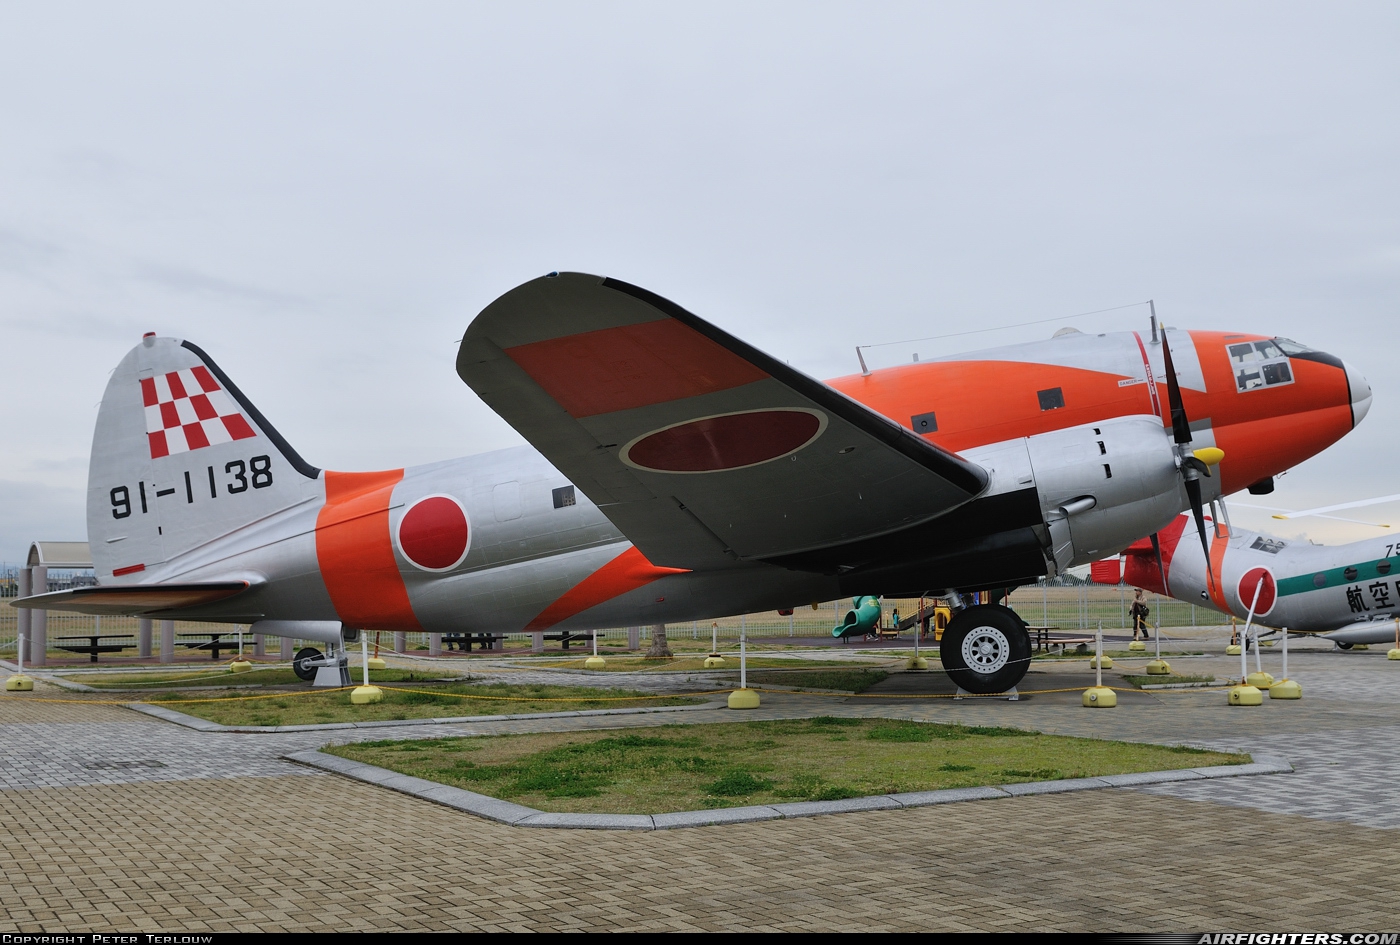 Japan - Air Force Curtiss C-46D 91-1138 at Hamamatsu (RJNH), Japan